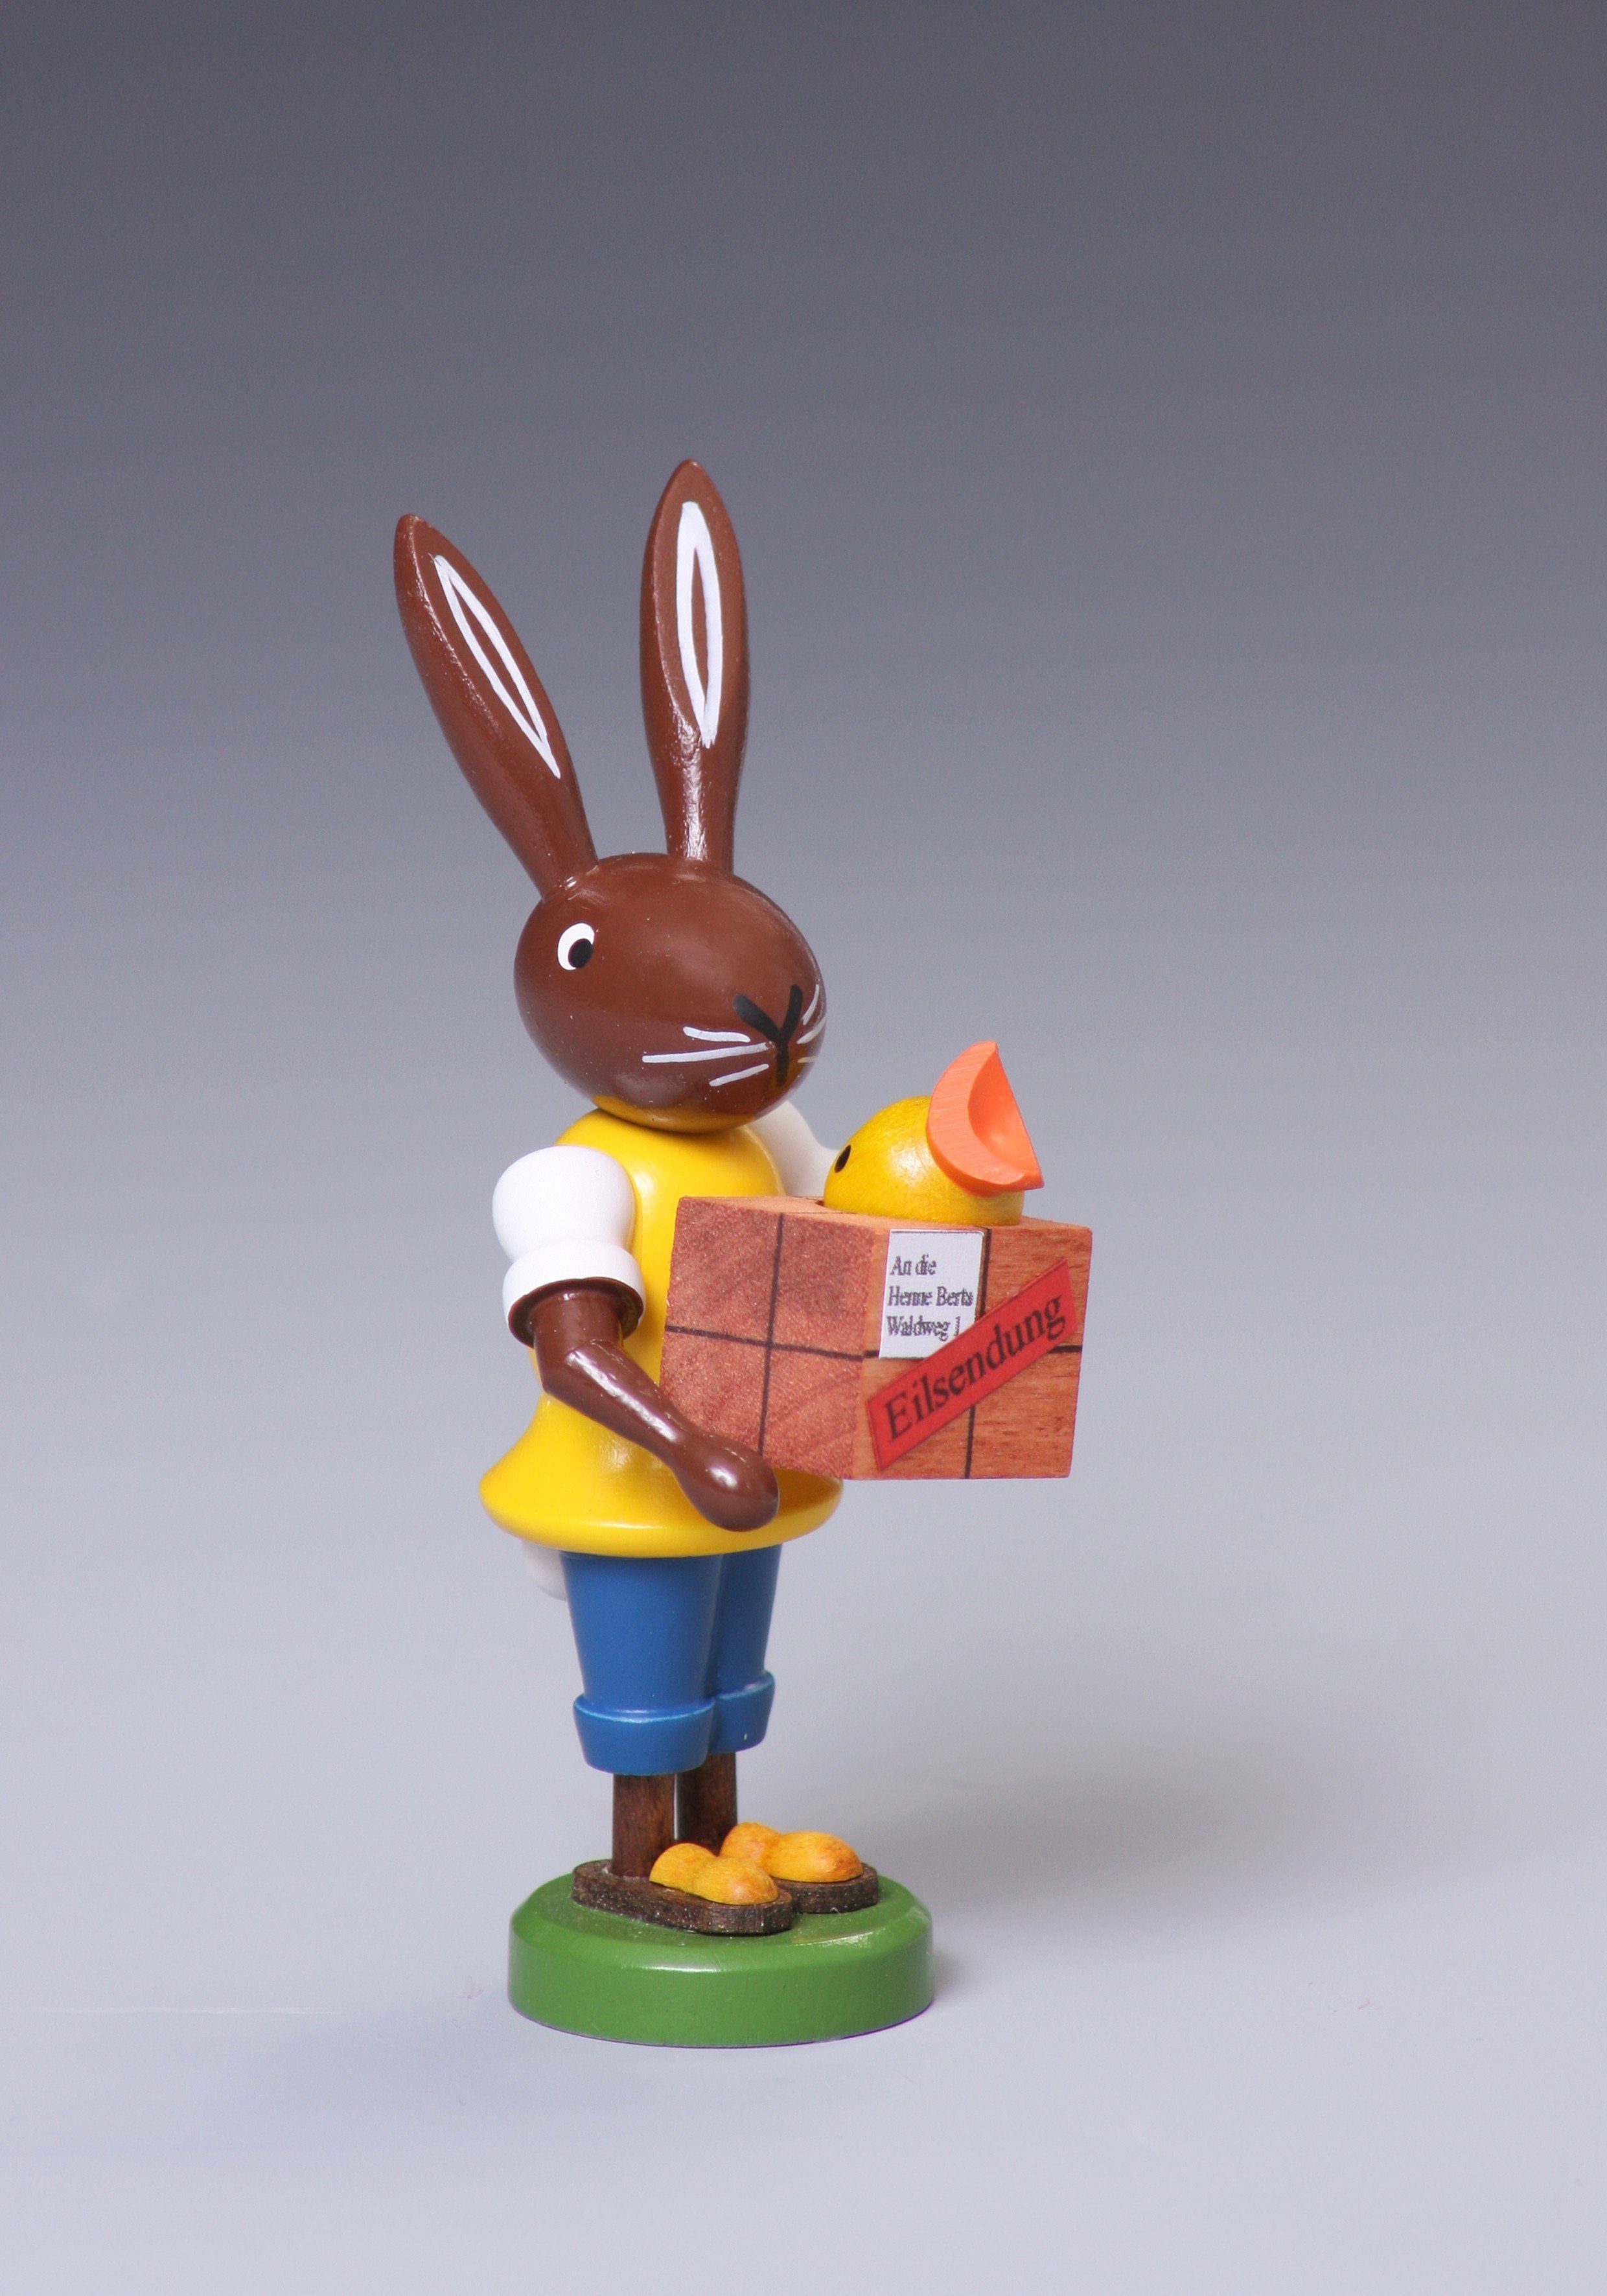 Osterhase Osterfigur Hase Postbote Höhe ca 9 cm NEU, mit Paket aus dem ein Küken schaut